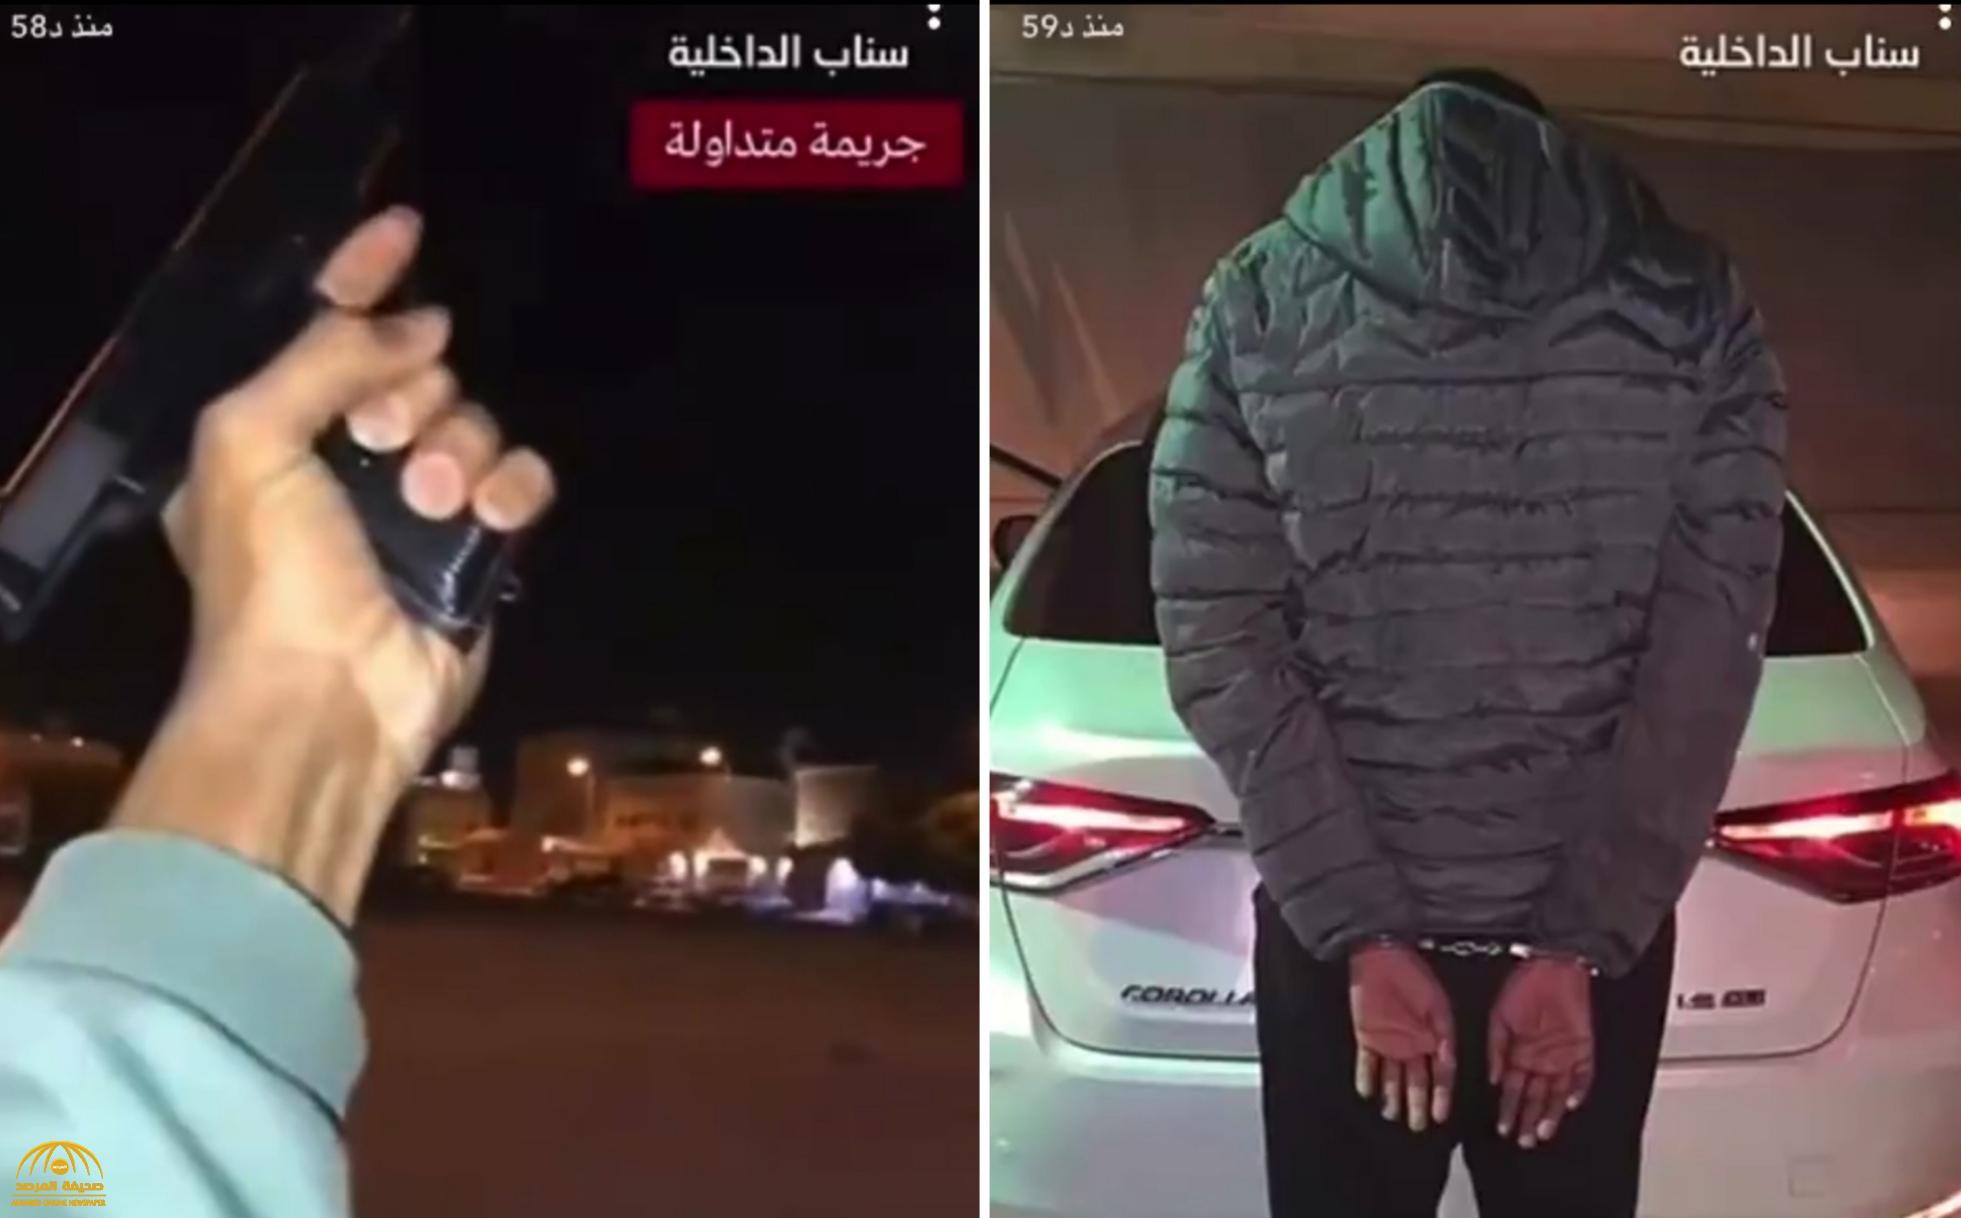 تطورات جديدة بشأن المواطن الذي ظهر في مقطع فيديو يتباهى بإطلاق النار بسلاح في أحد شوارع الرياض!